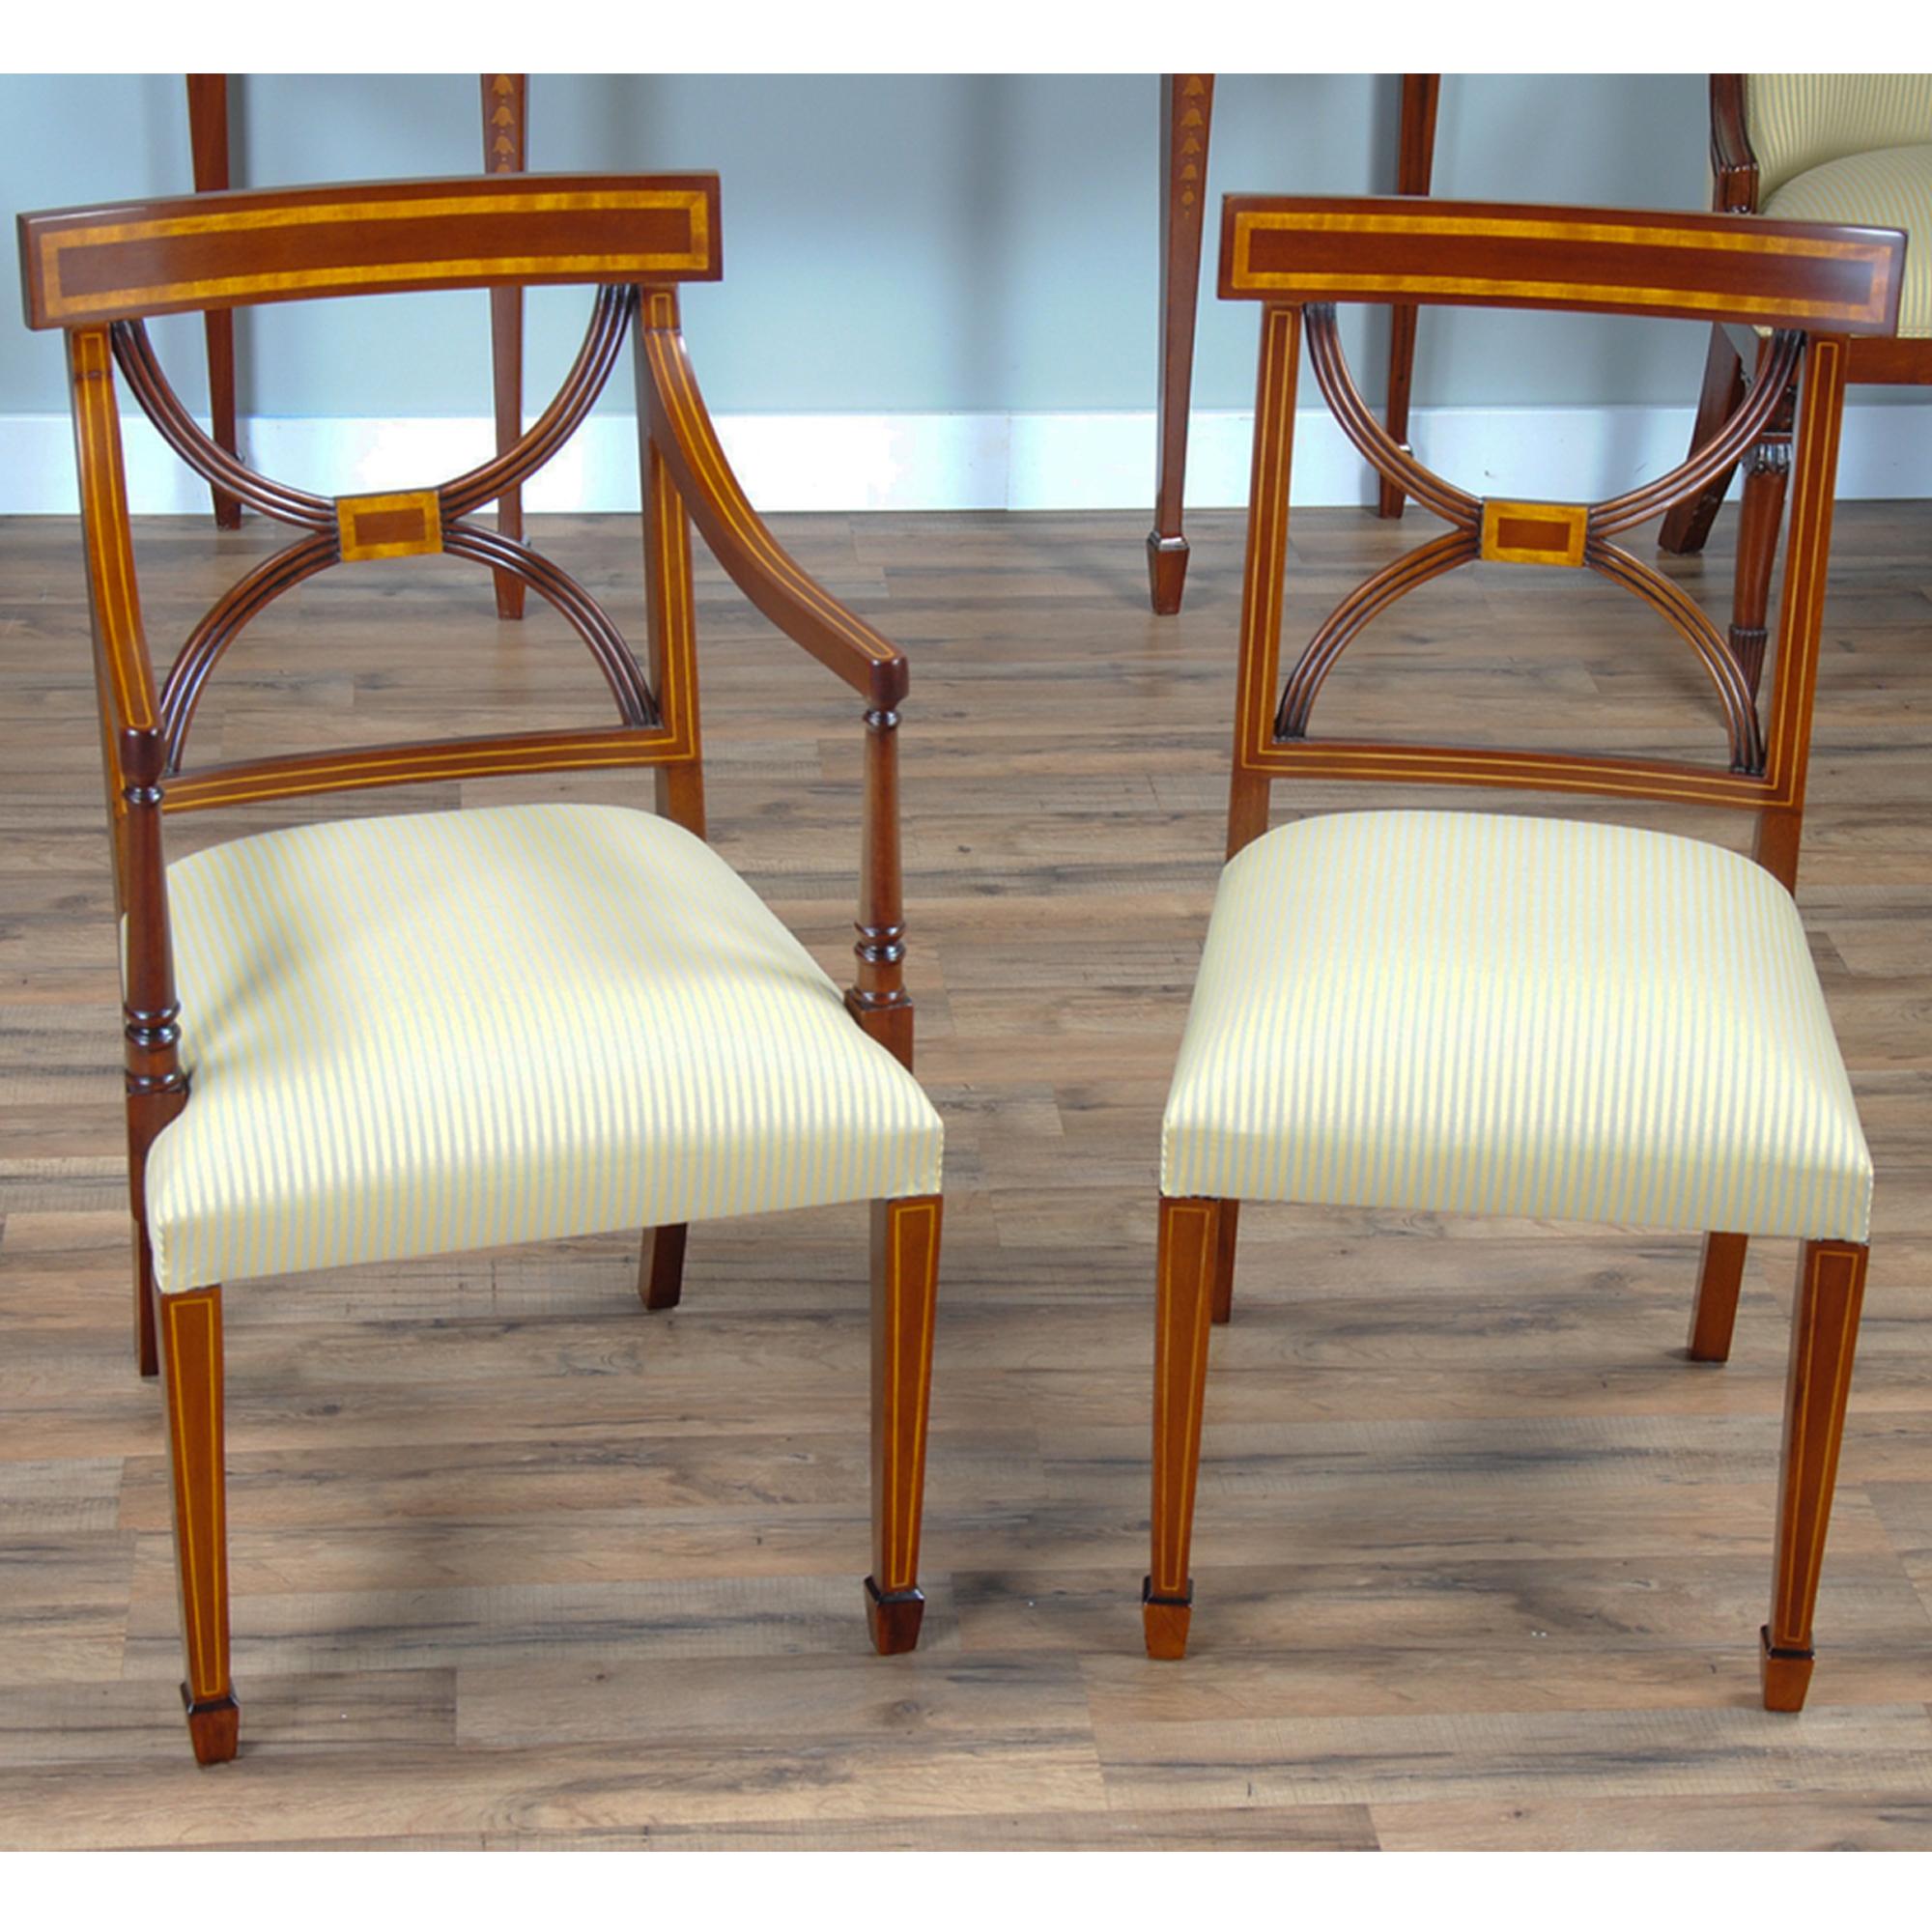 Cet ensemble de 10 chaises en acajou marqueté Sheraton comprend 2 chaises à bras et 8 chaises d'appoint. Chaque chaise est fabriquée à partir d'acajou massif de qualité supérieure cultivé dans les plantations et de placages de qualité supérieure.